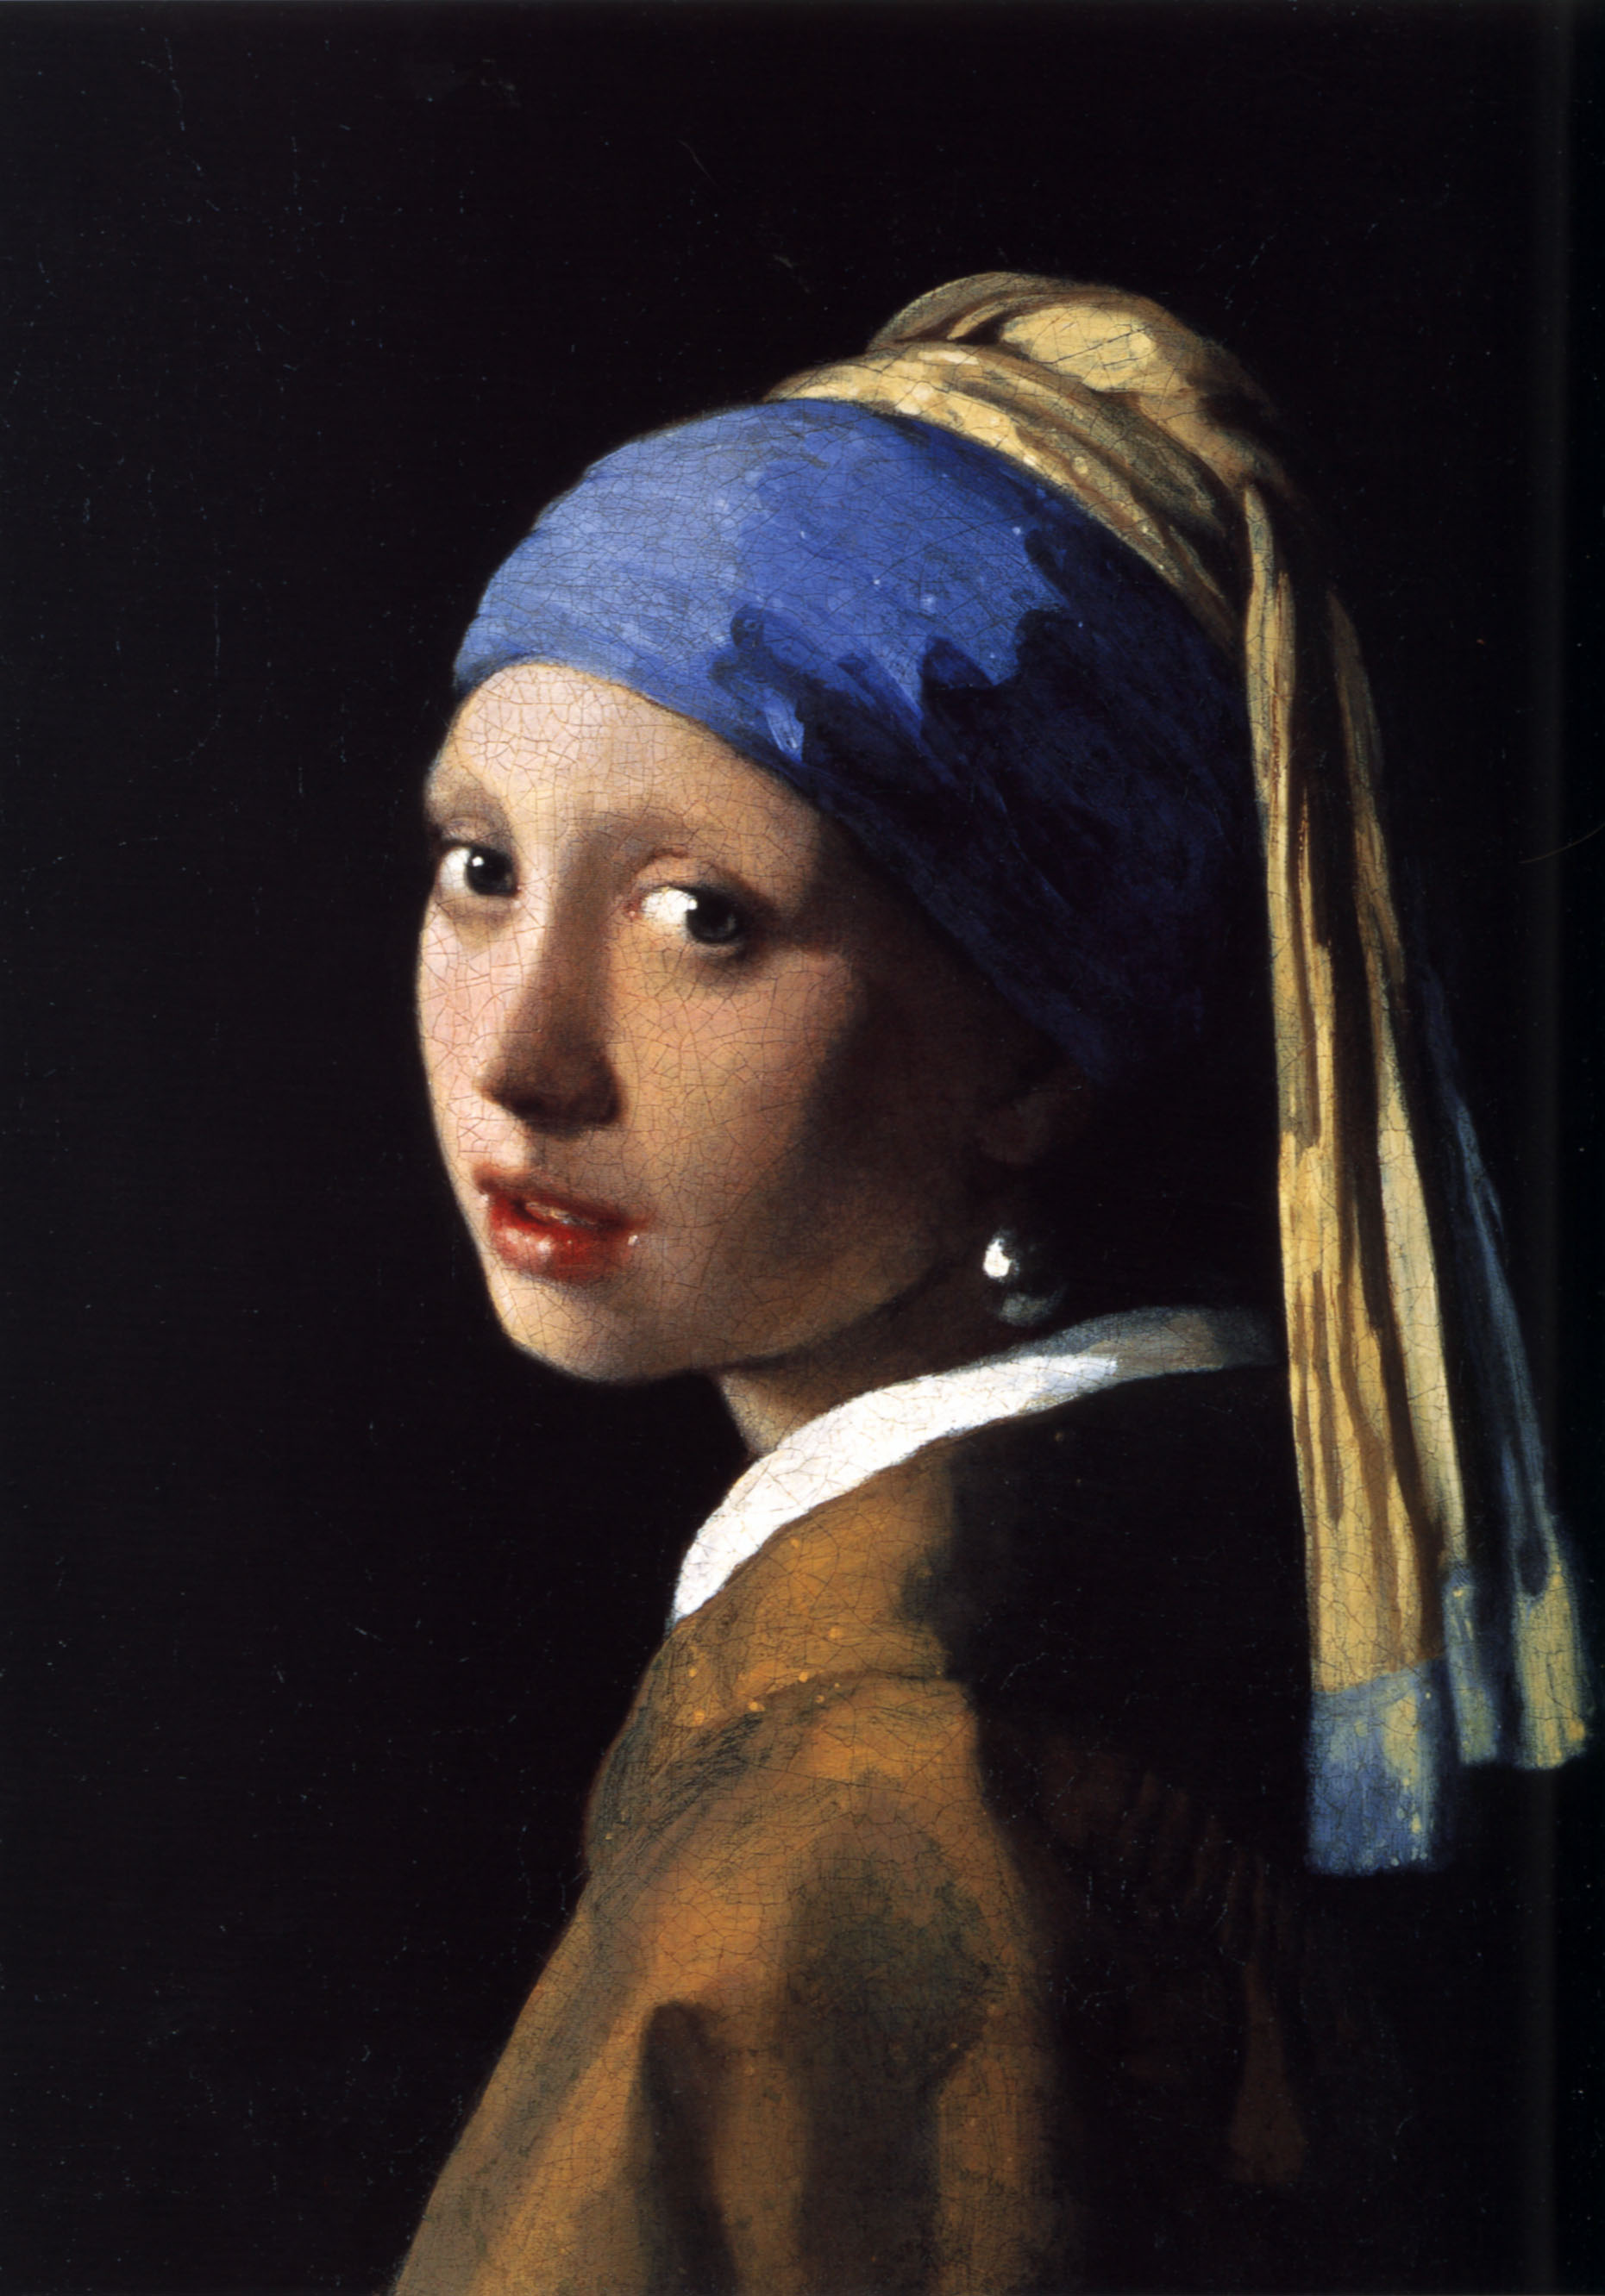 Hầu hết mọi người đều đồng thuận rằng, Verm Vermeer đã đạt được arete với bức tranh nổi tiếng “Cô gái đeo hoa tai ngọc trai”. Thư viện ảnh Hoàng gia Mauritshuis, The Hague. (Ảnh thuộc phạm vi cộng đồng)